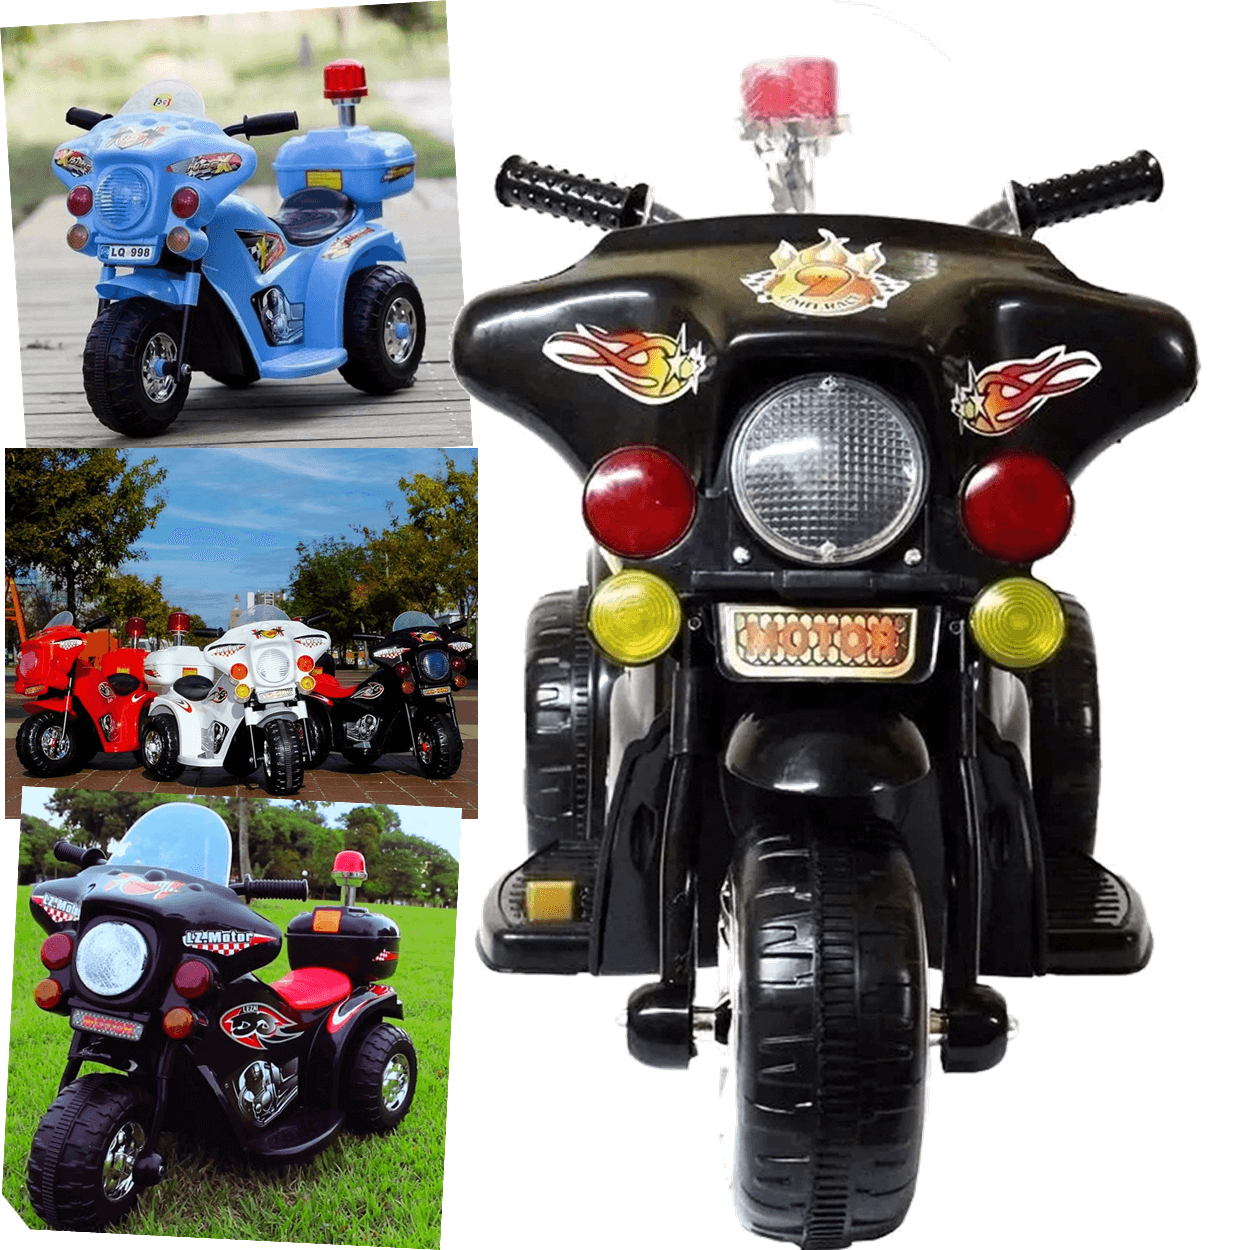 Moto Eletrica Infantil Policia Shiny Toys Motorcycle 6v Preta - 4